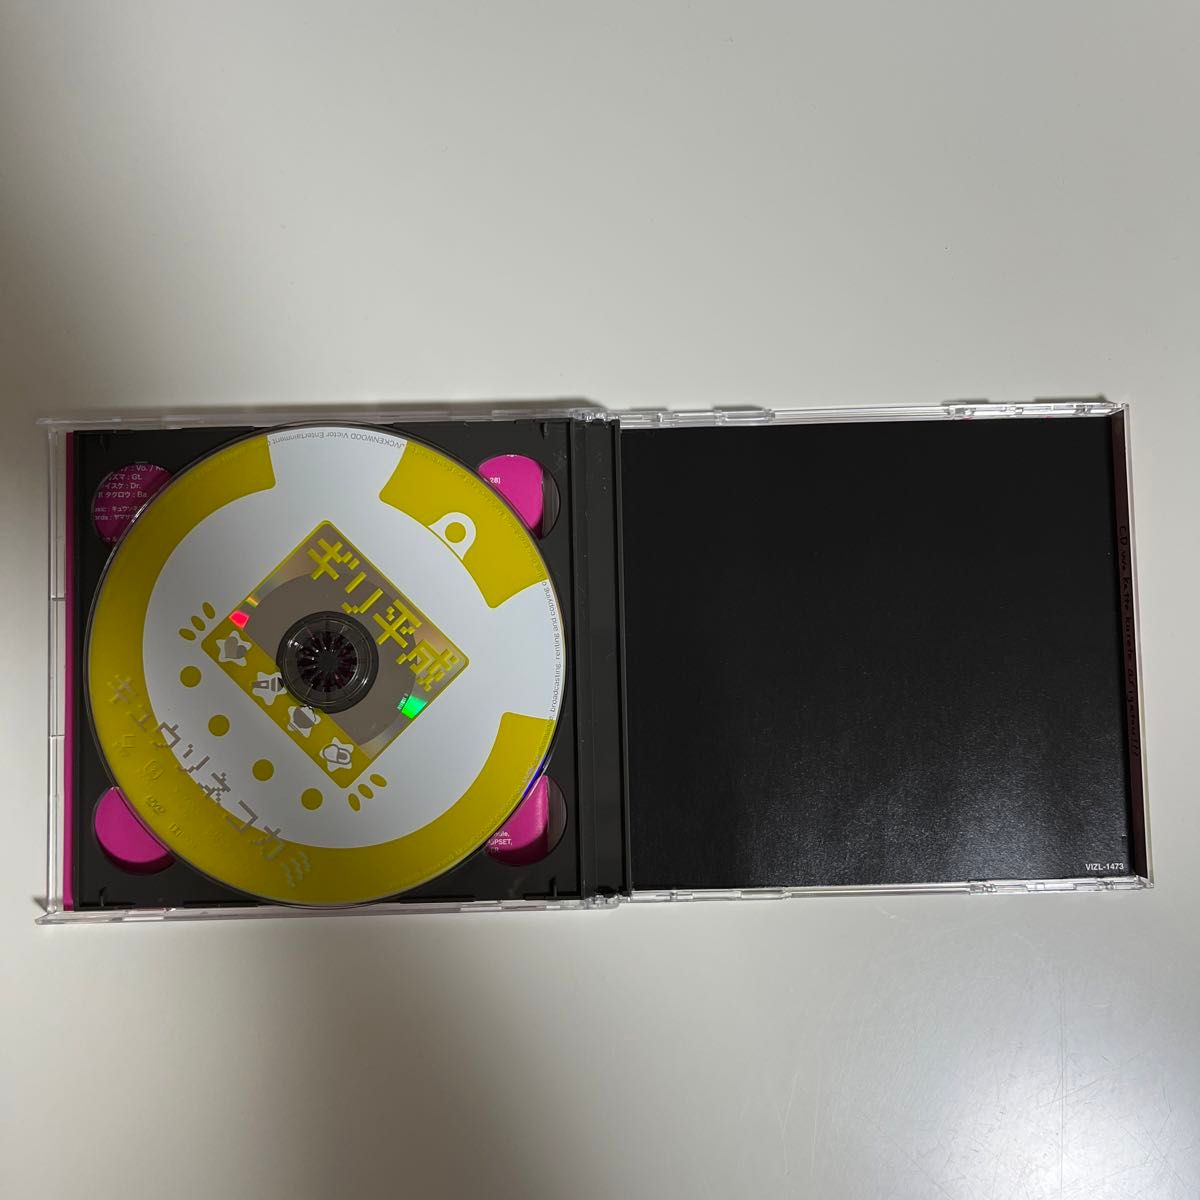 ギリ平成 (完全生産限定盤 [CD+DVD) CD キュウソネコカミ